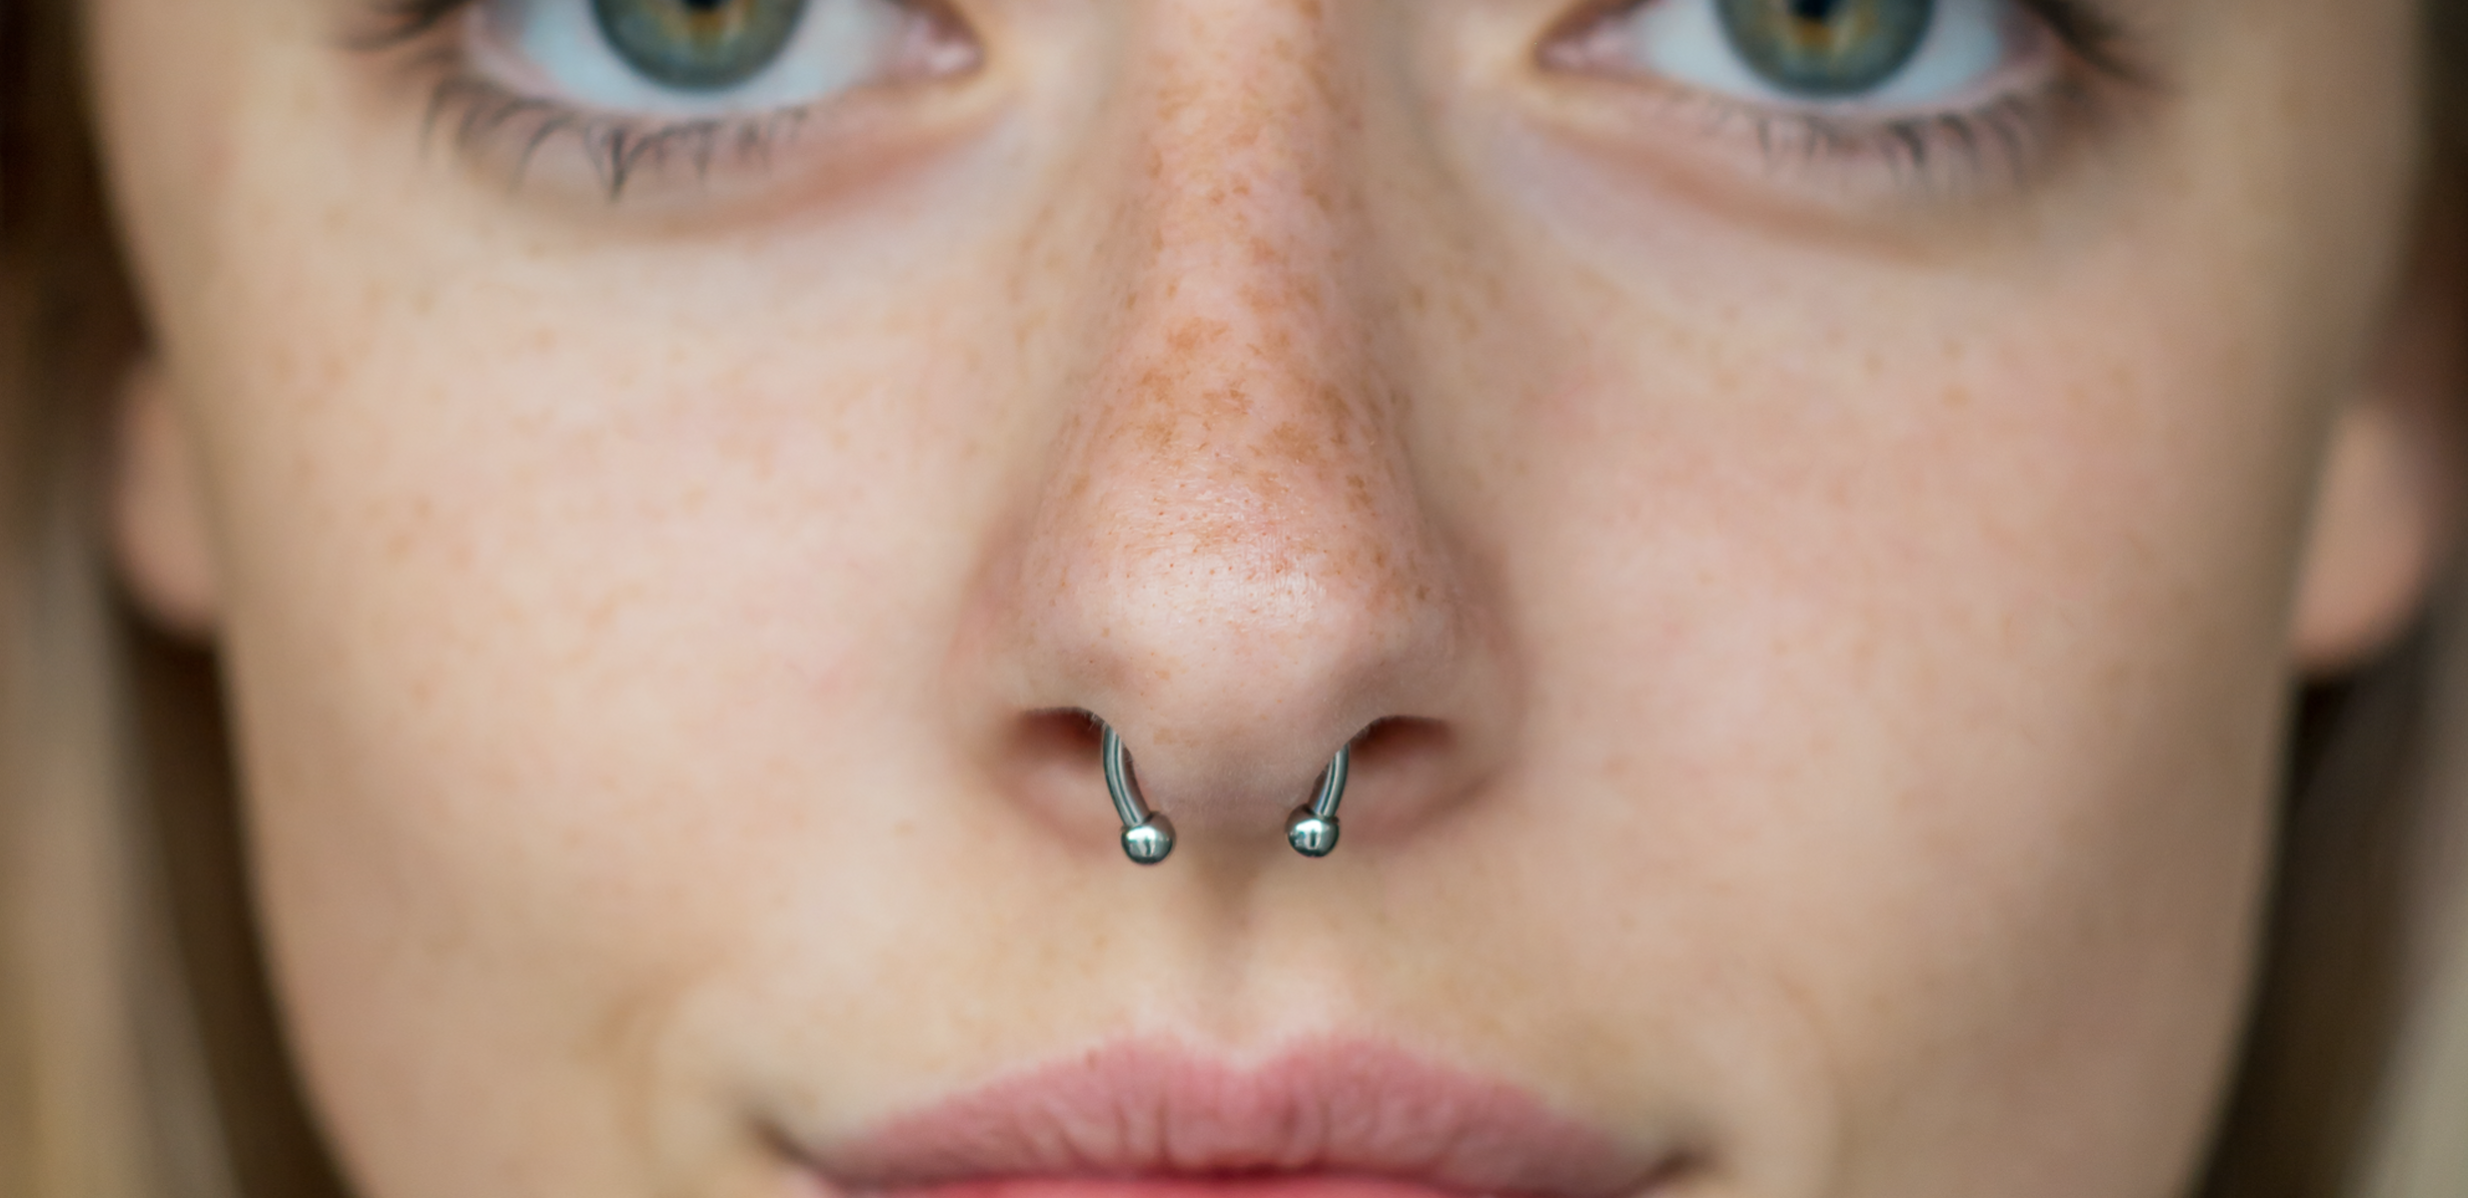 Имитация пирсинга носа без прокола имеет три вида украшений